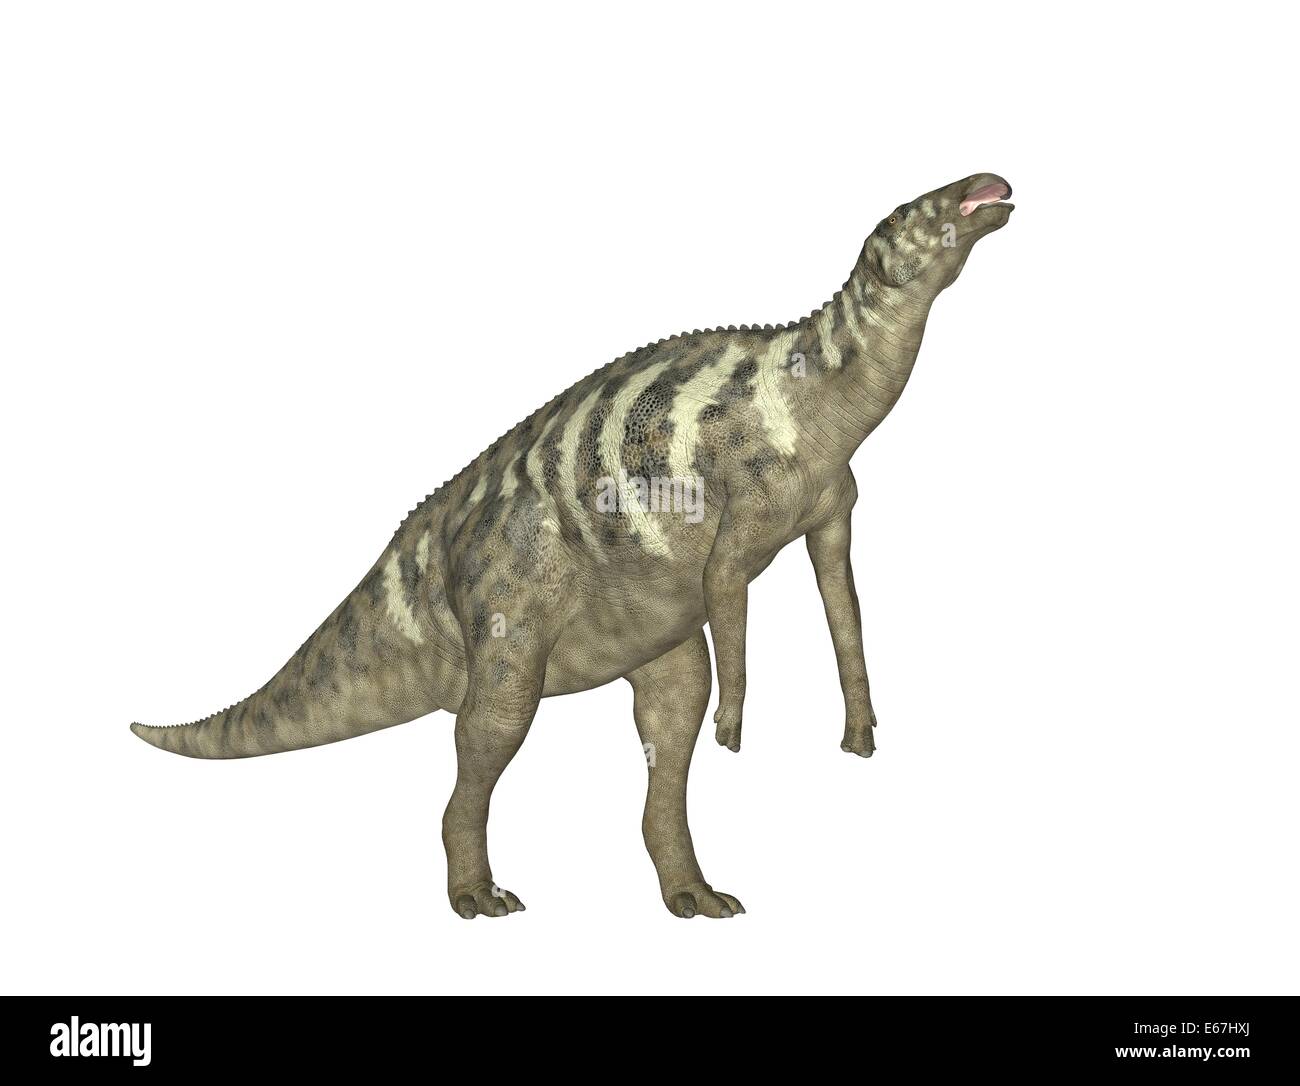 Dinosaurier Edmontosaurus / dinosaur Edmontosaurus Stock Photo